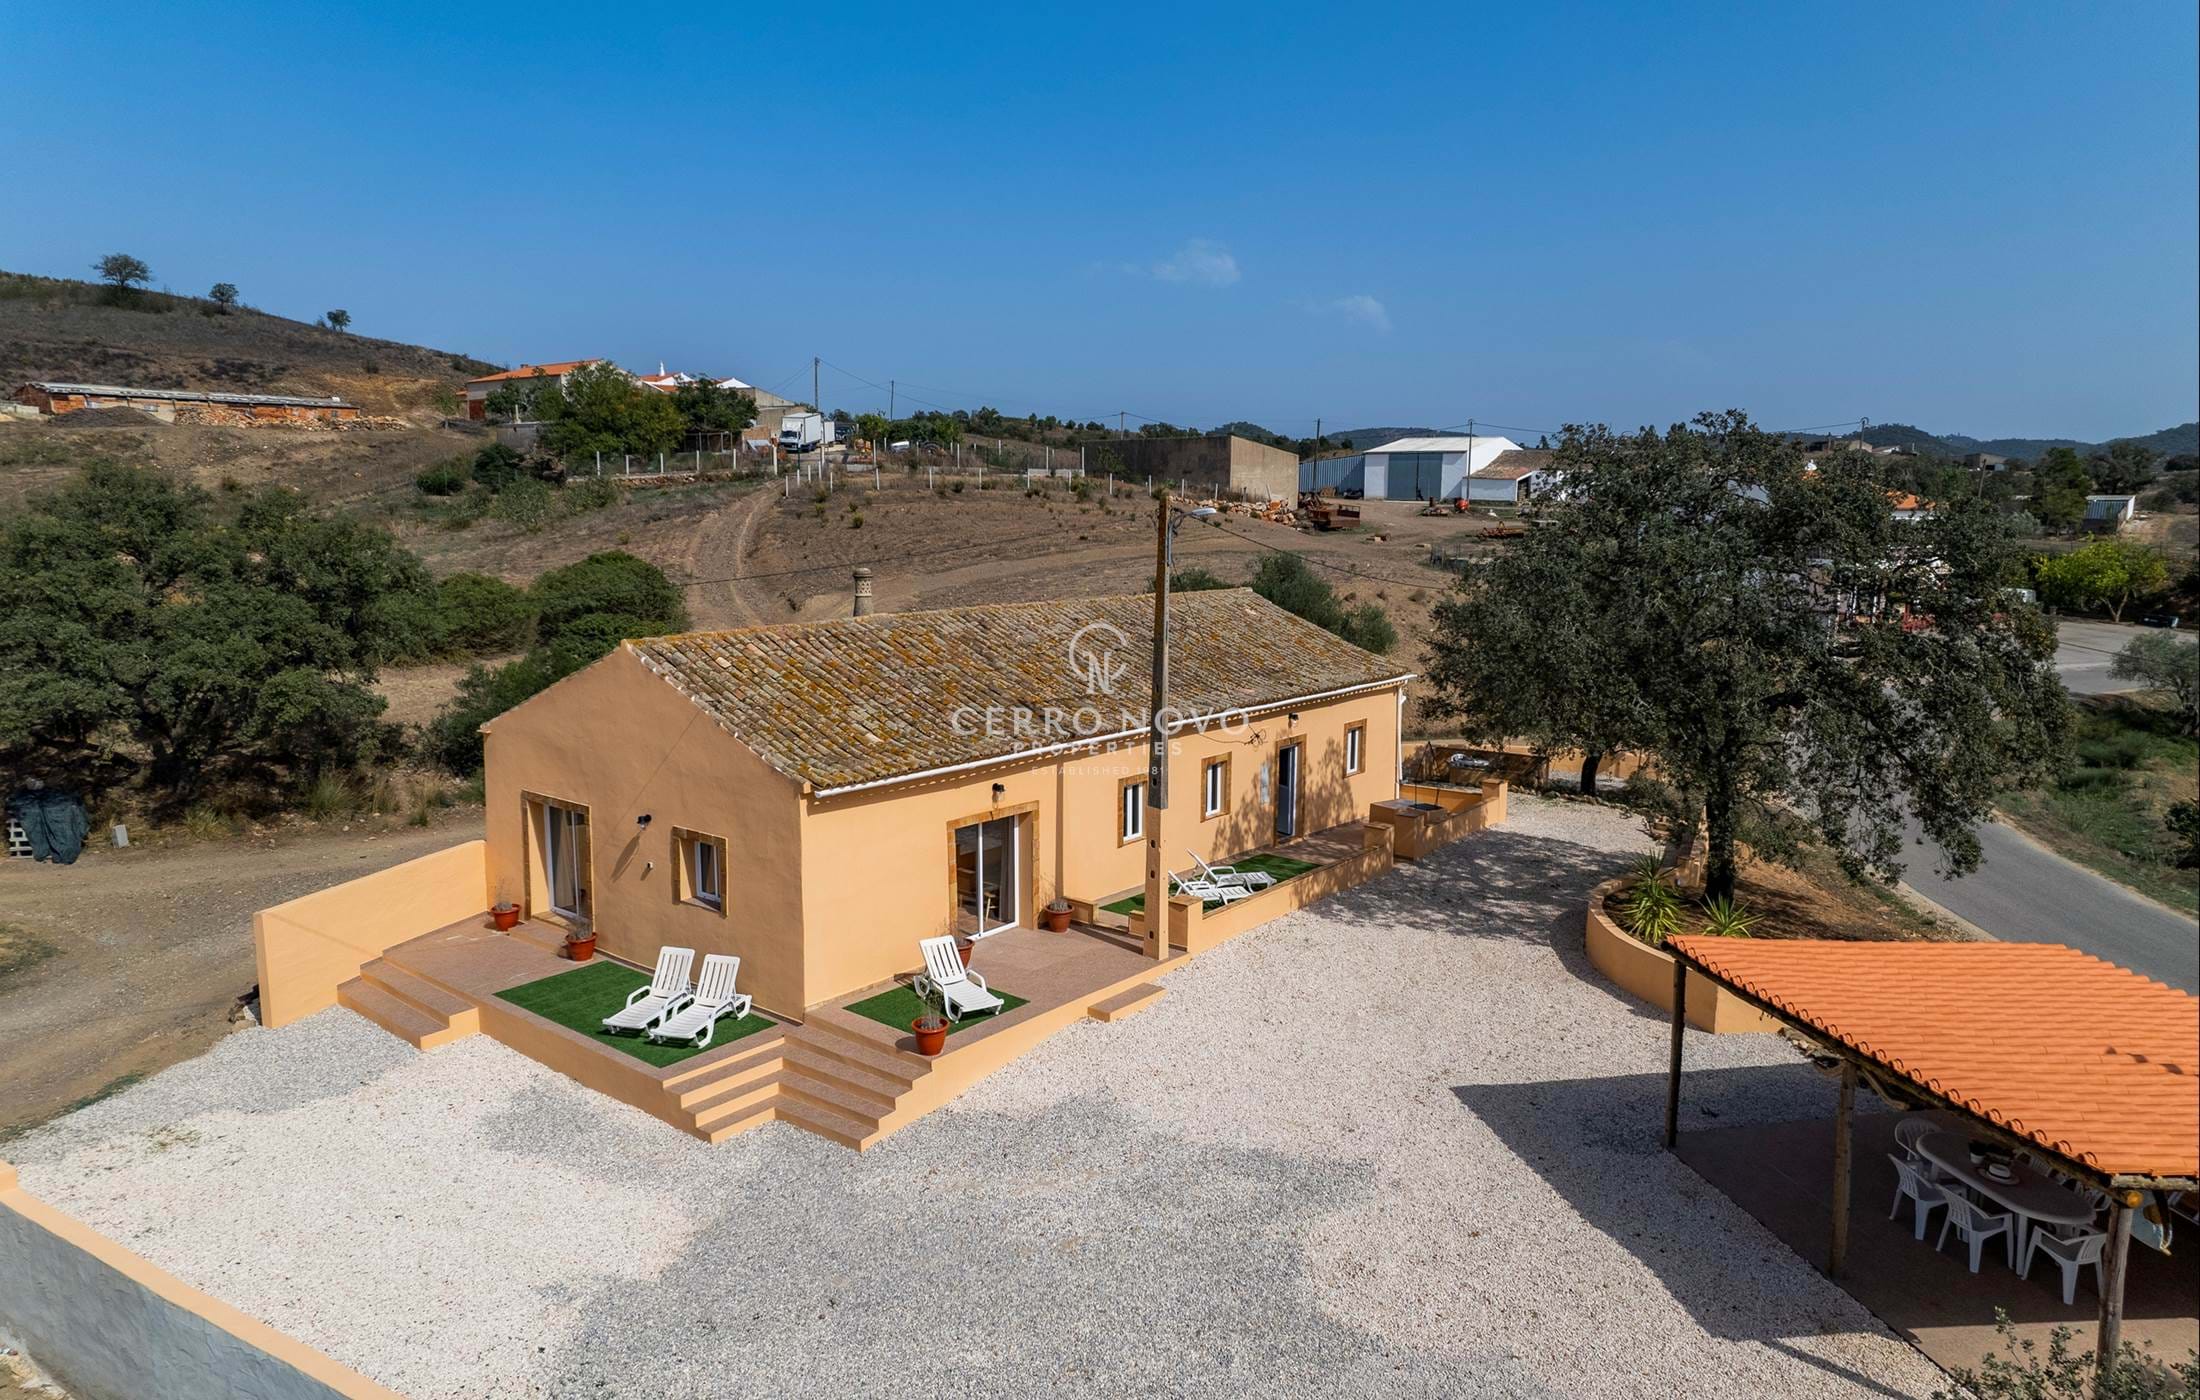 A Rural Algarve Cottage Set Amongst Orange Groves